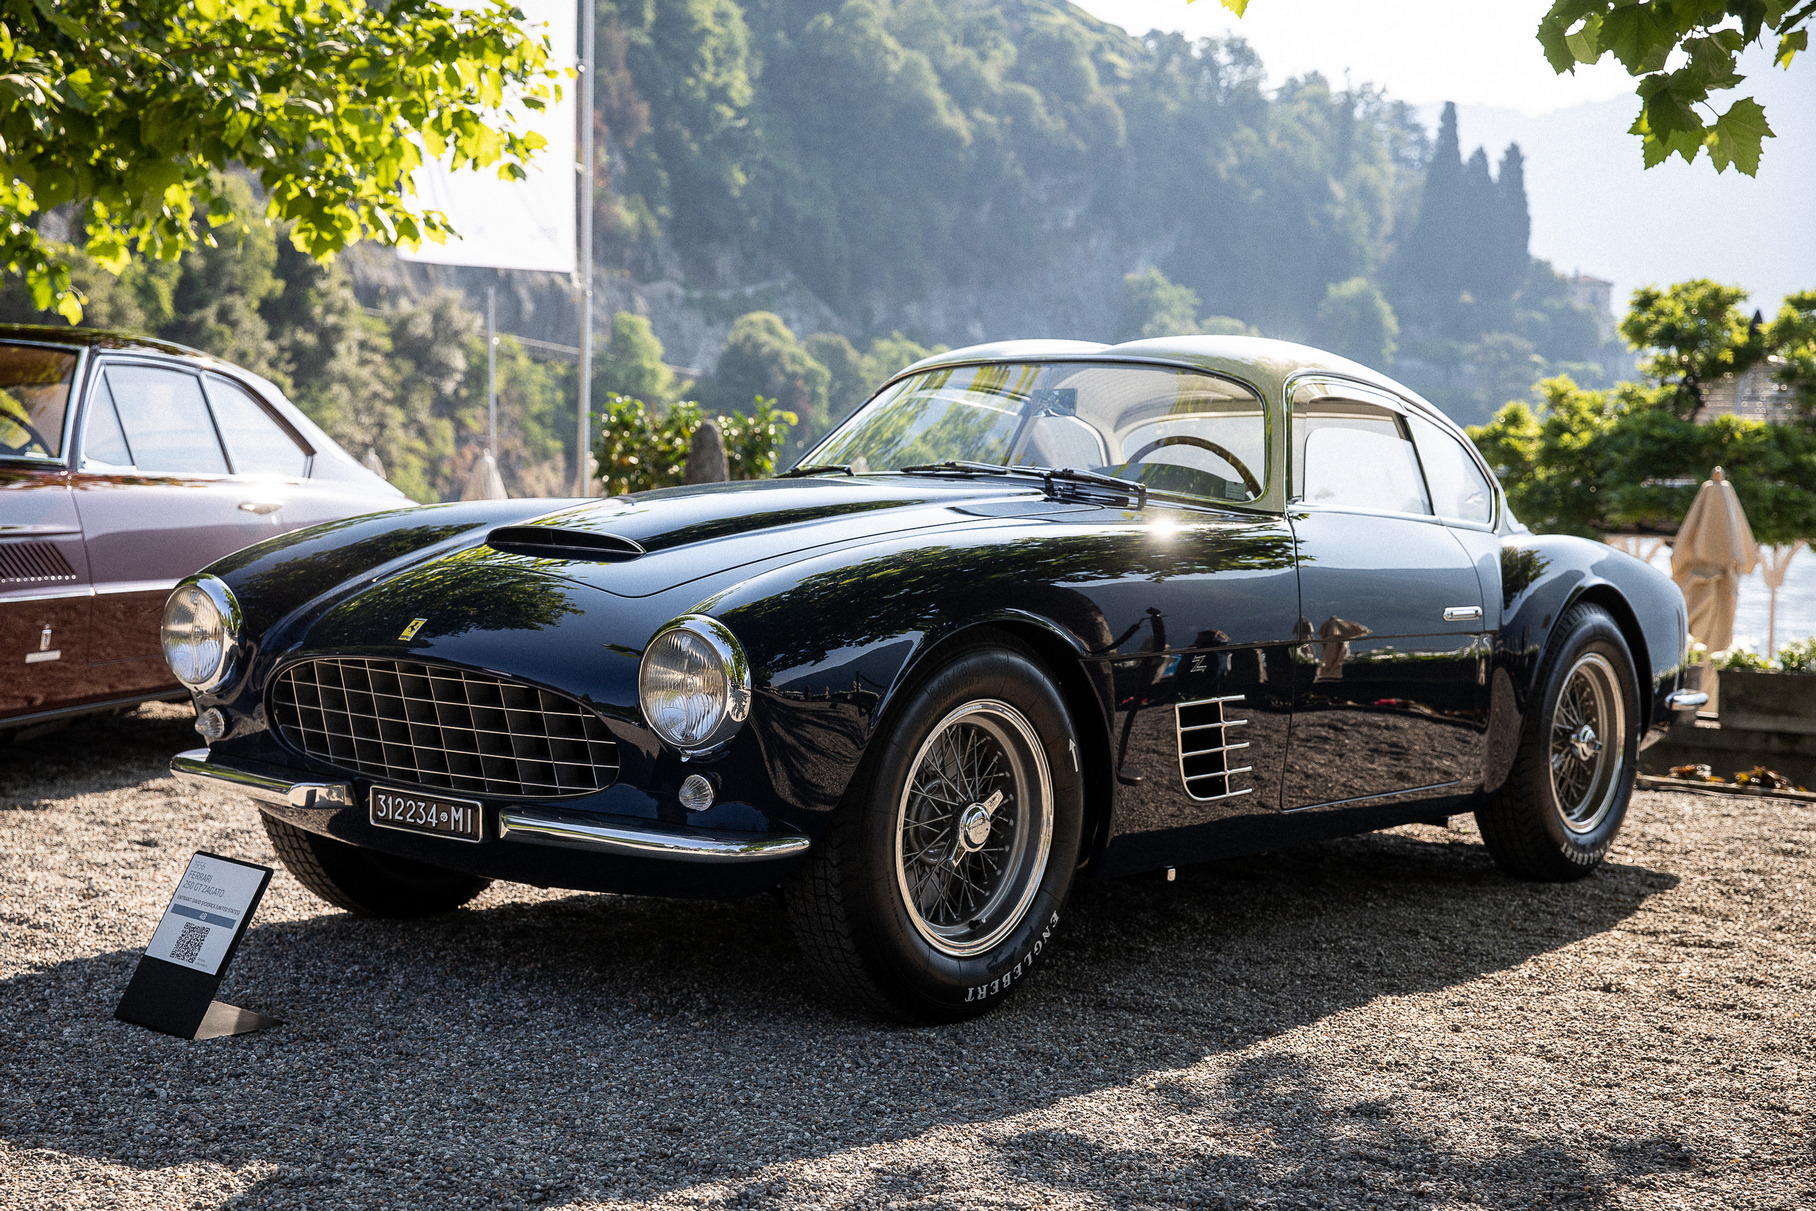 Жюри особо отметило Ferrari 250 GT американского коллекционера Дэвида Сидорика. Любое купе полугоночной серии «Tour de France» — это большая ценность: например, в прошлом году одна из таких машин получила главный приз конкурса, «Best of show». Но это тёмно-синее купе со светлой крышей — редкость вдвойне. Ferrari c заводским номером 0515GT — одна из пяти машин с лёгким кузовом работы Уго Загато, изготовленная в 1956 году по заказу миланского бизнесмена и гонщика-любителя Владимиро Галлуцци. Спорткар легко опознать даже издали по характерной «двугорбой» крыше.